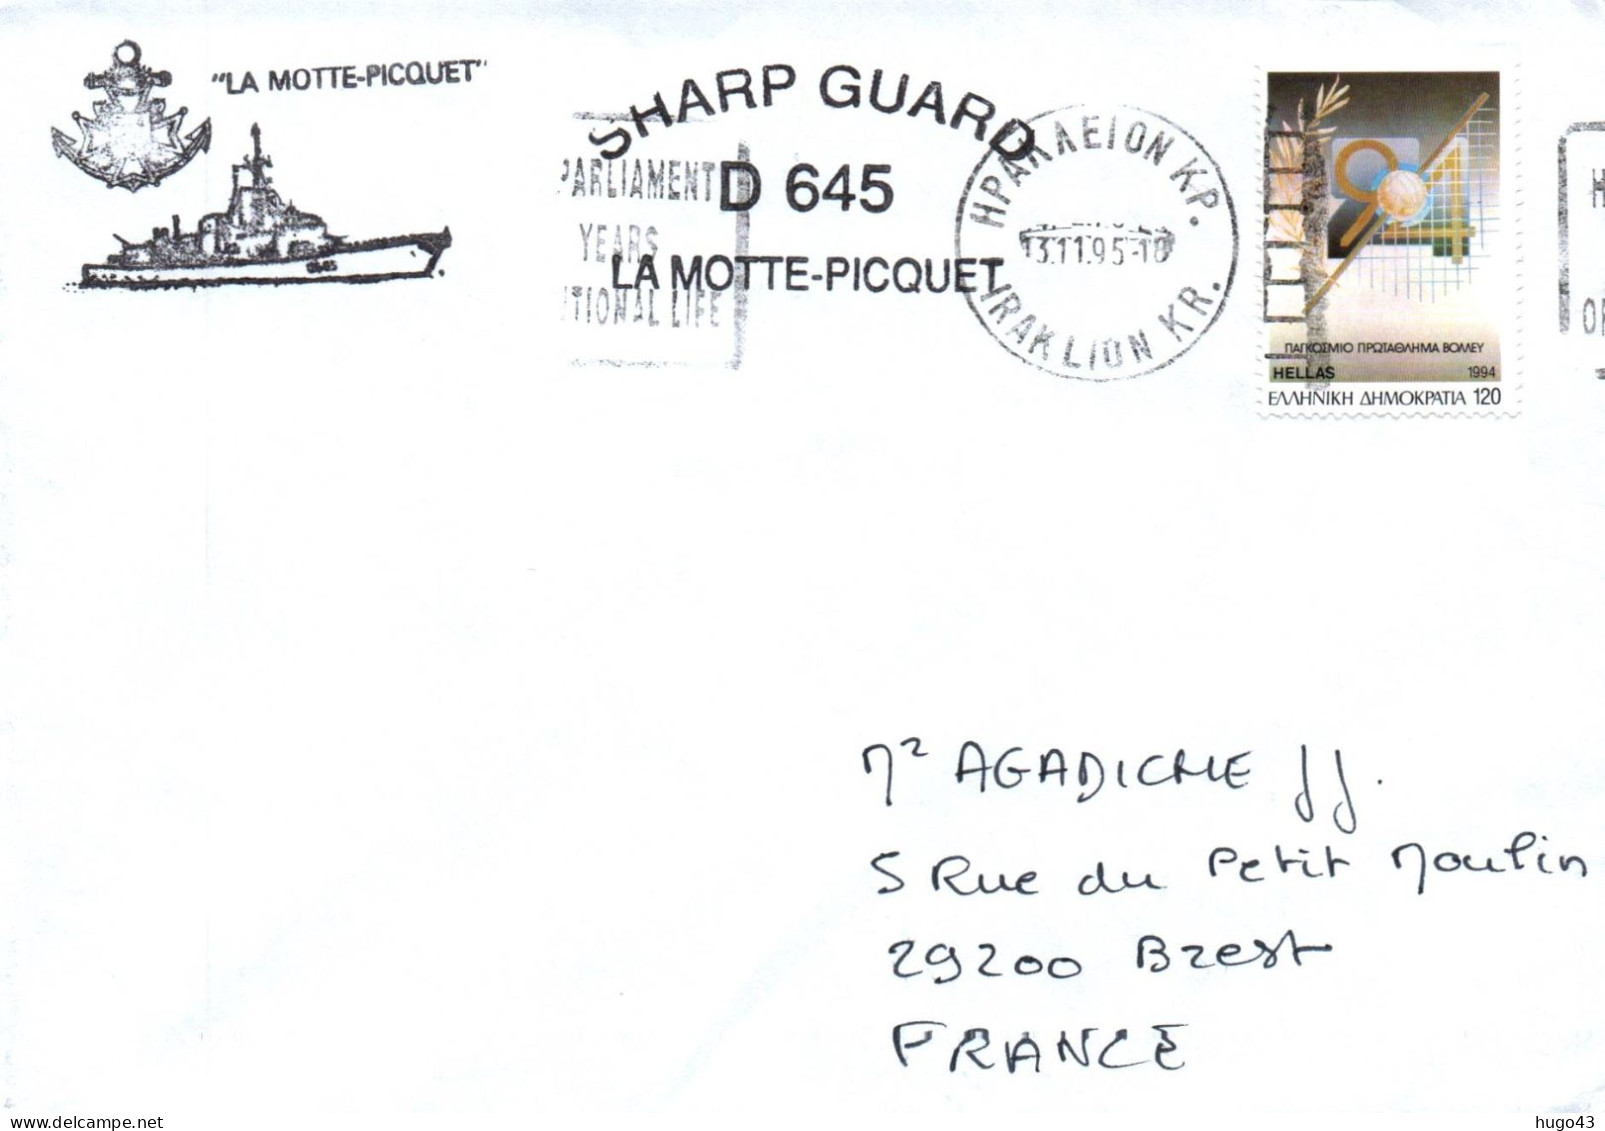 ENVELOPPE AVEC CACHET FREGATE FASM LA MOTTE PICQUET - SHARP GUARD D645 - ESCALE EN GRECE LE 13/11/1995 - Correo Naval